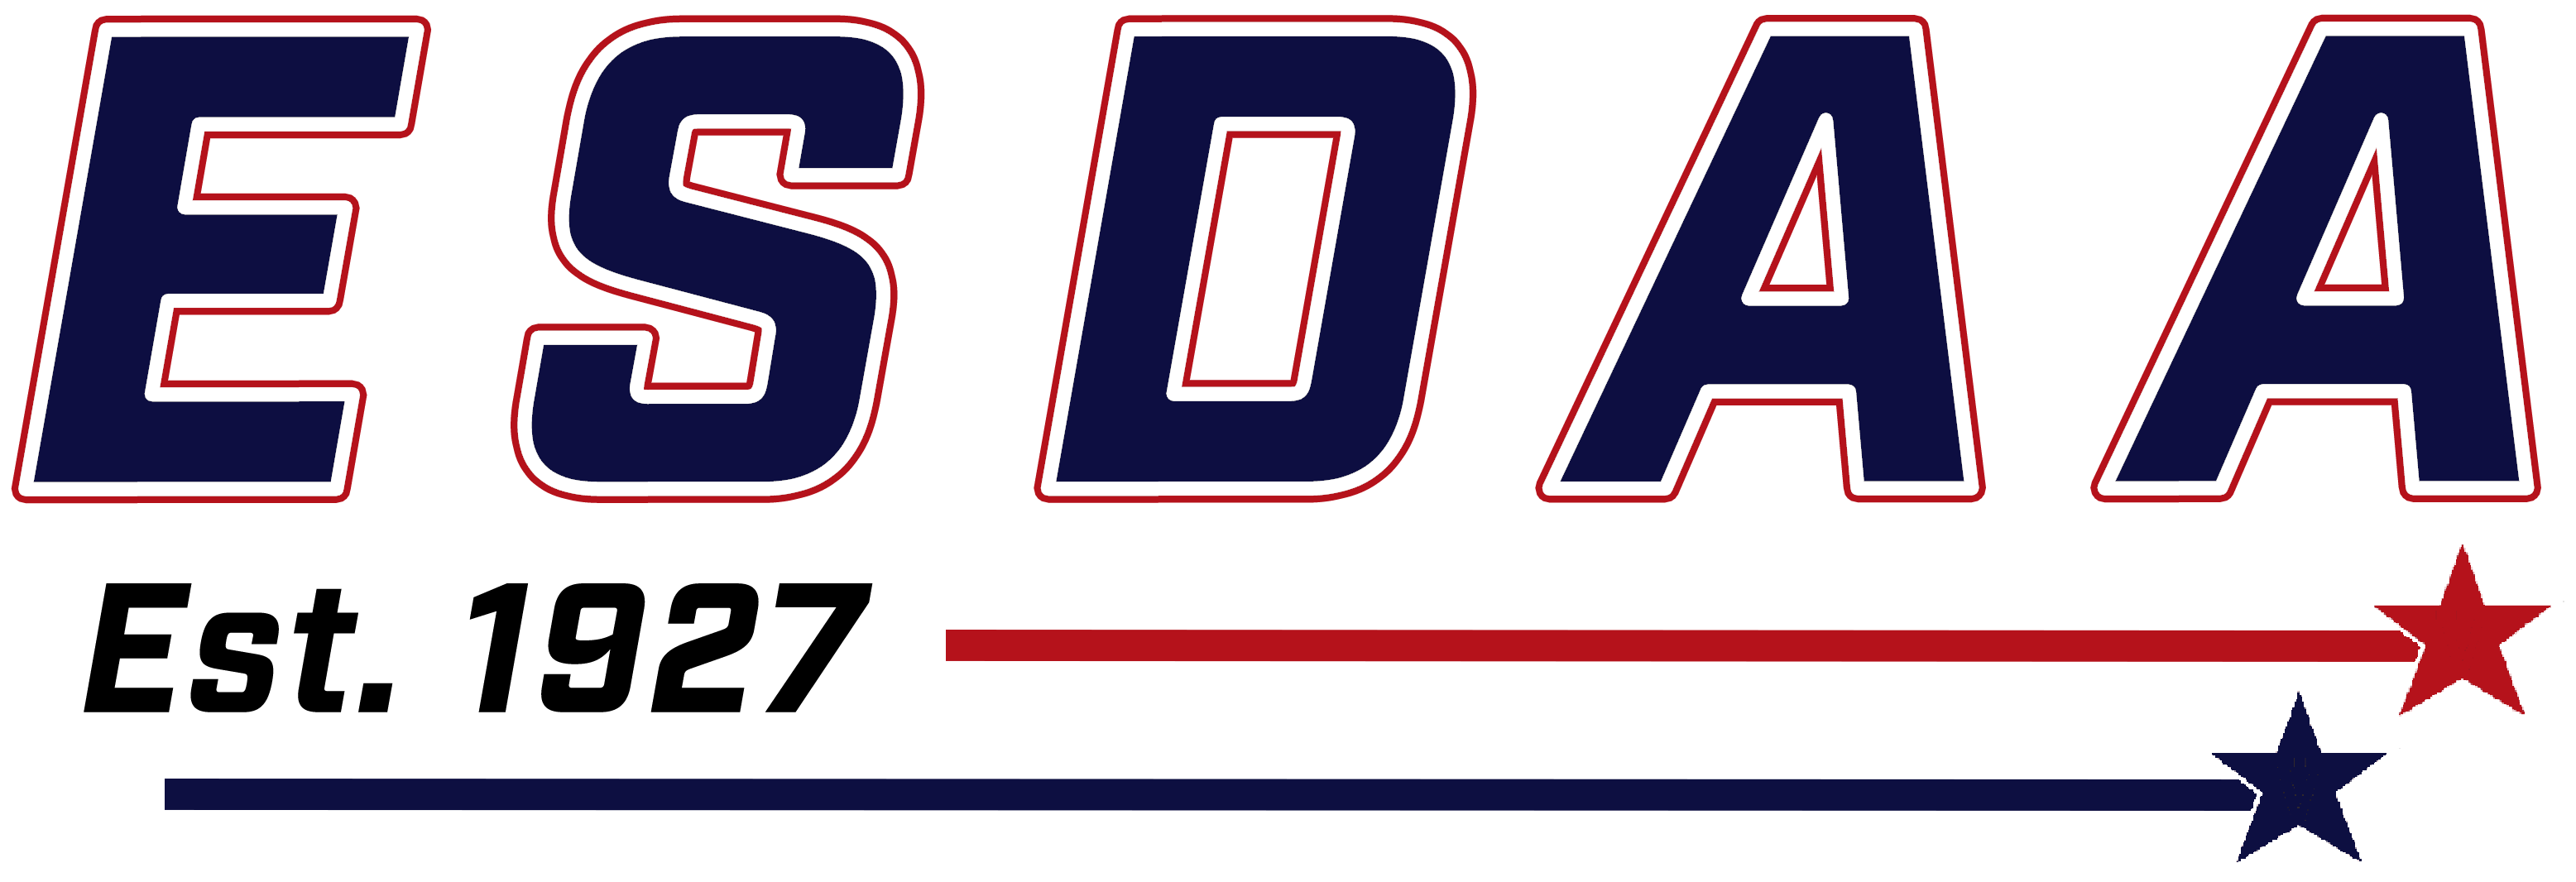 ESDAA Logo